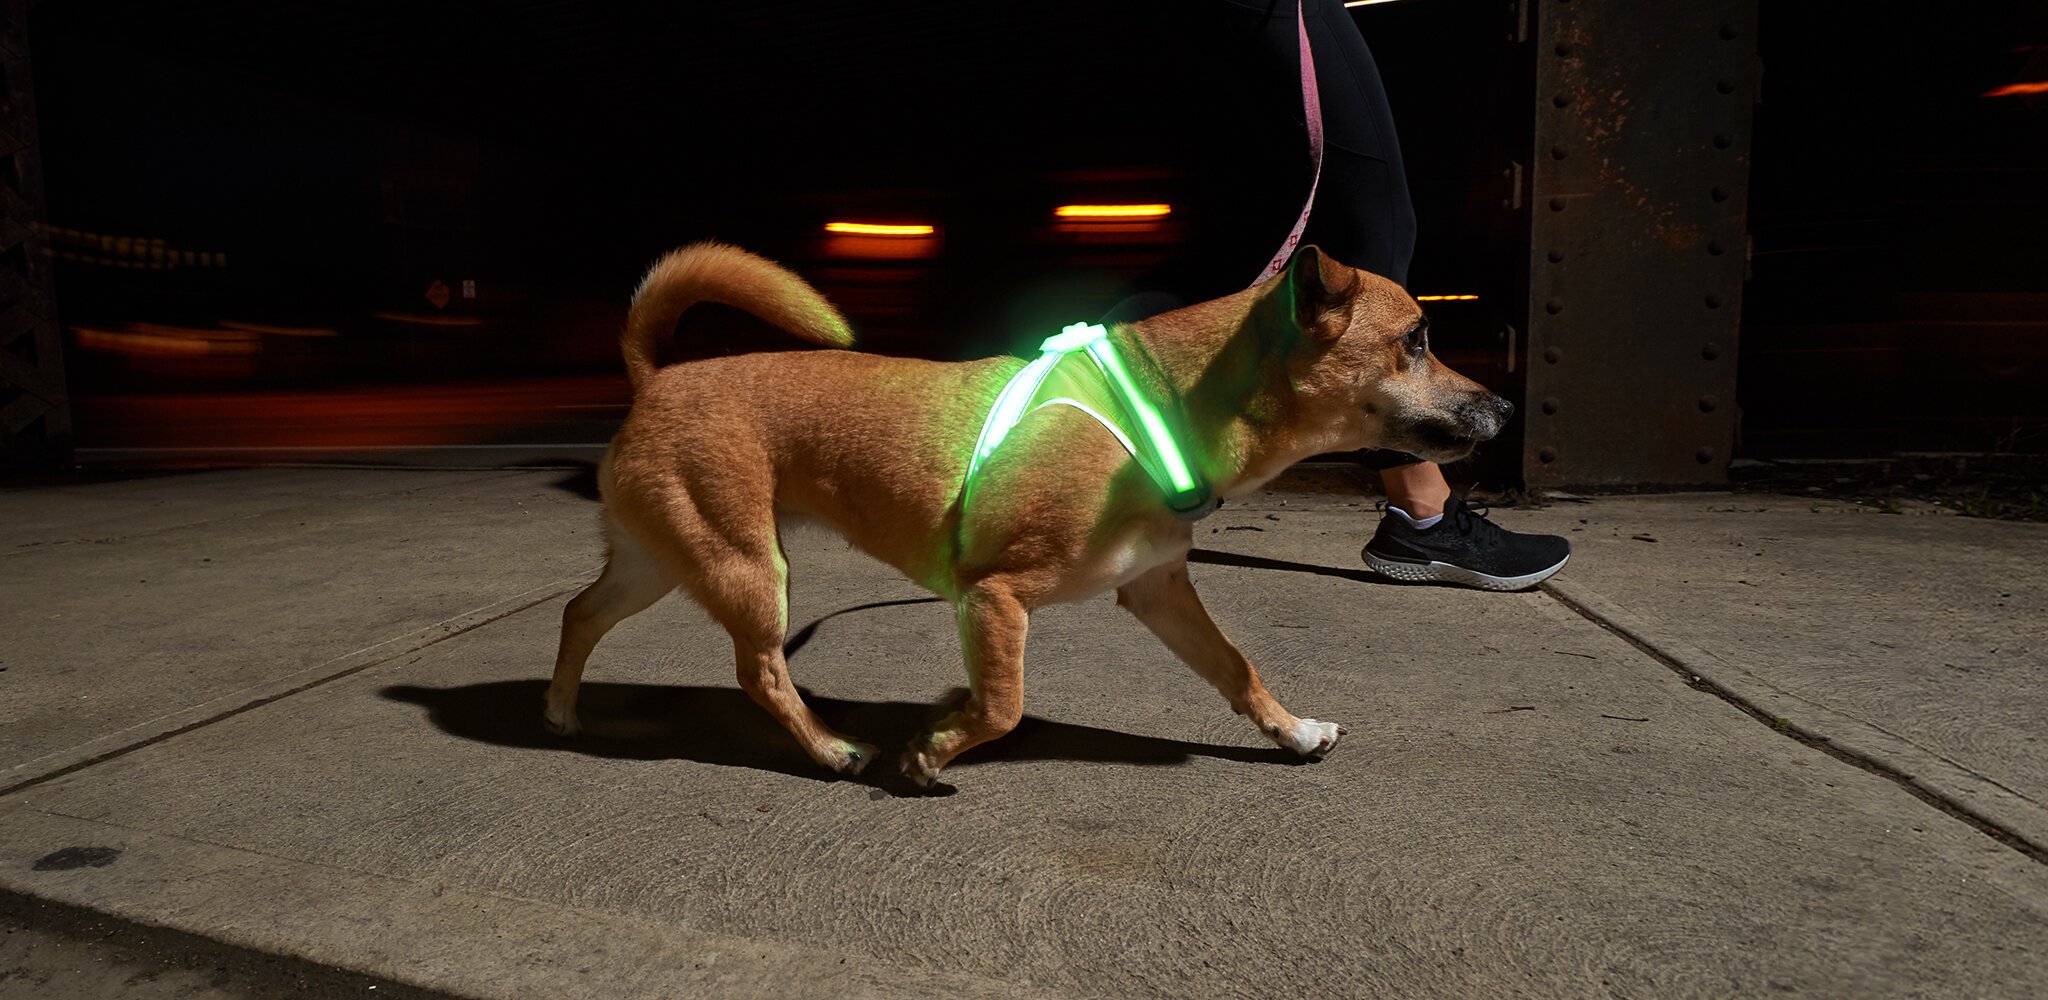 noxgear lighthound led illuminated & reflective dog harness